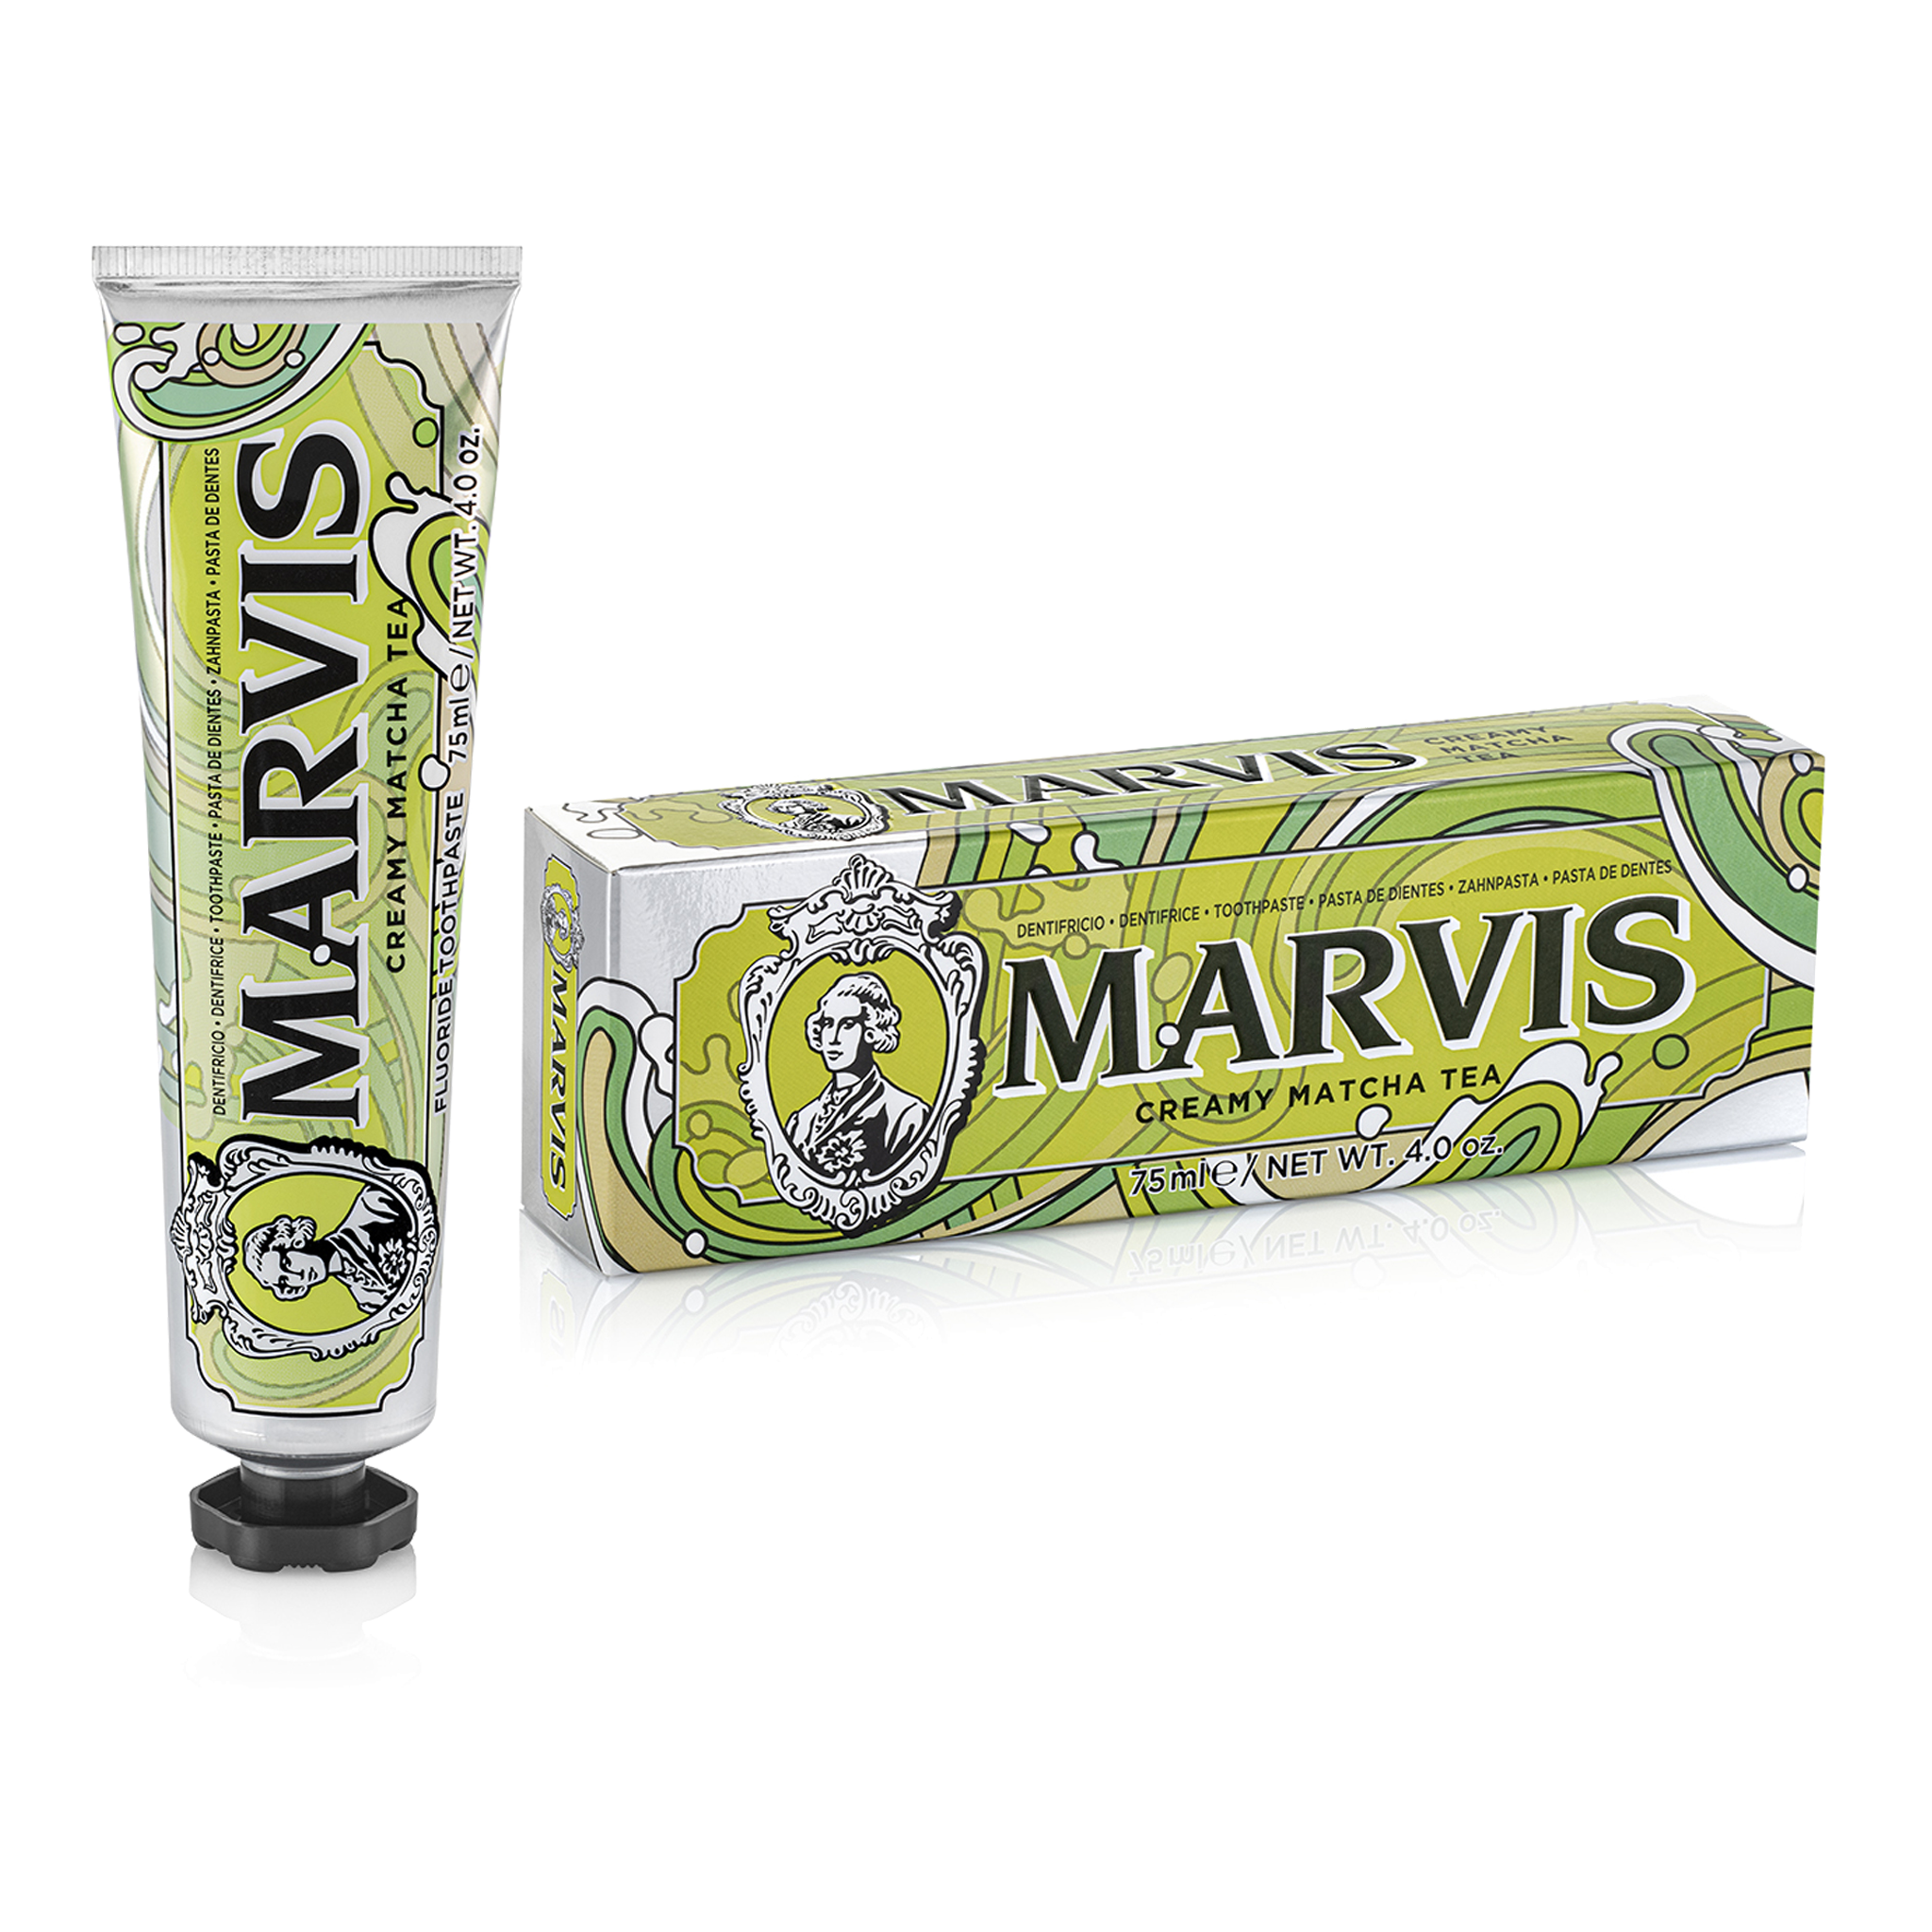 Marvis Tea Collection - Creamy Matcha Tea Toothpaste (75ml)